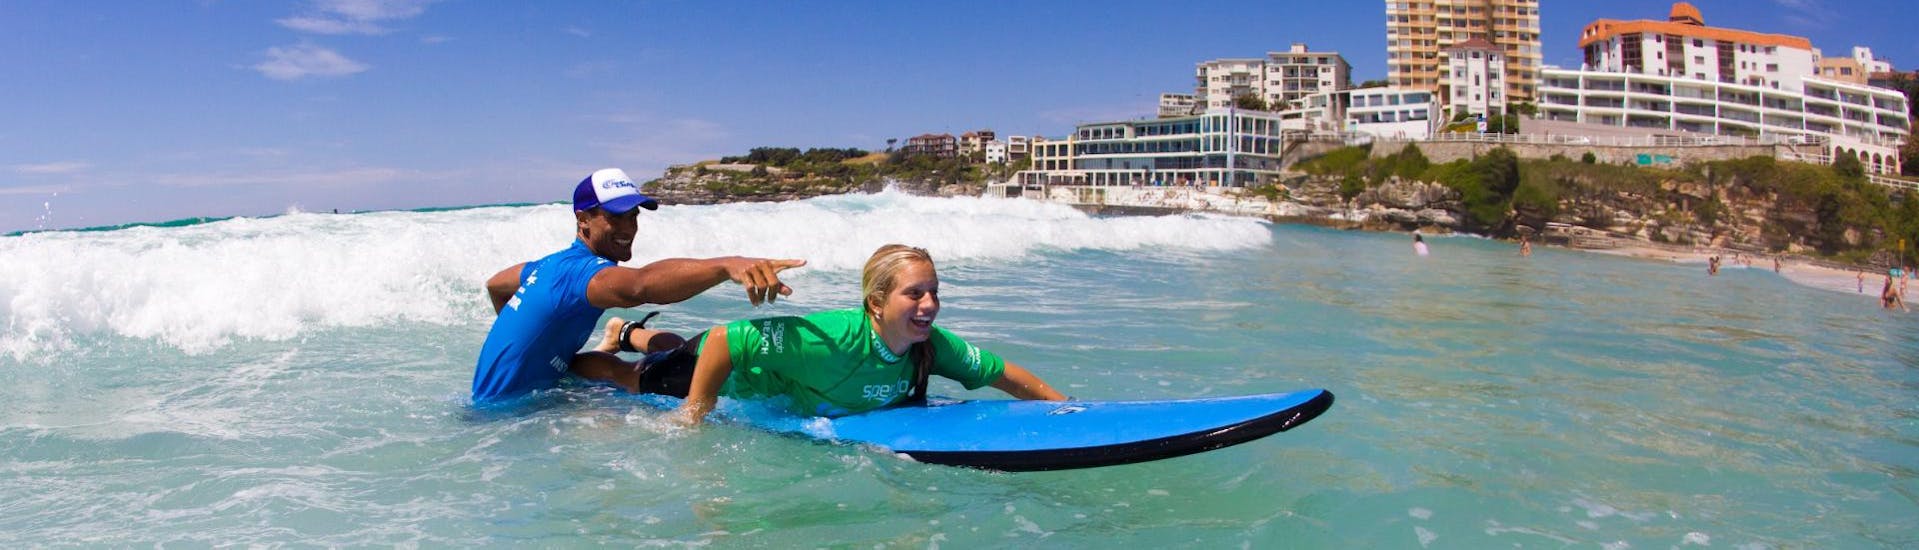 Lezioni di surf a Bondi Beach da 12 anni per principianti.